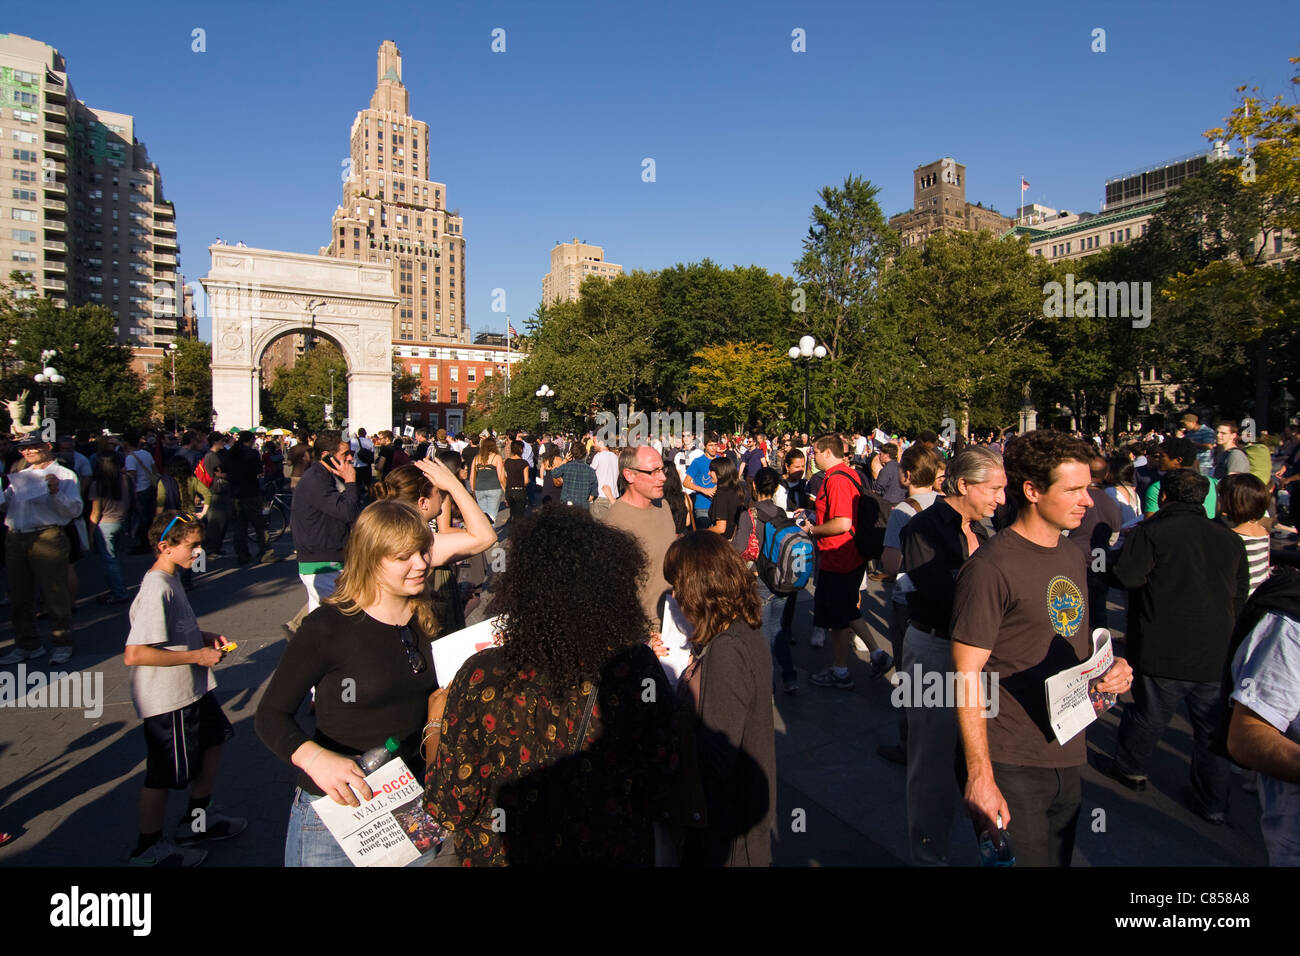 Des milliers de personnes à New York Washington Square Park, au cours de l'Occupy Wall Street à partir de mars Zuccotti Park. Banque D'Images